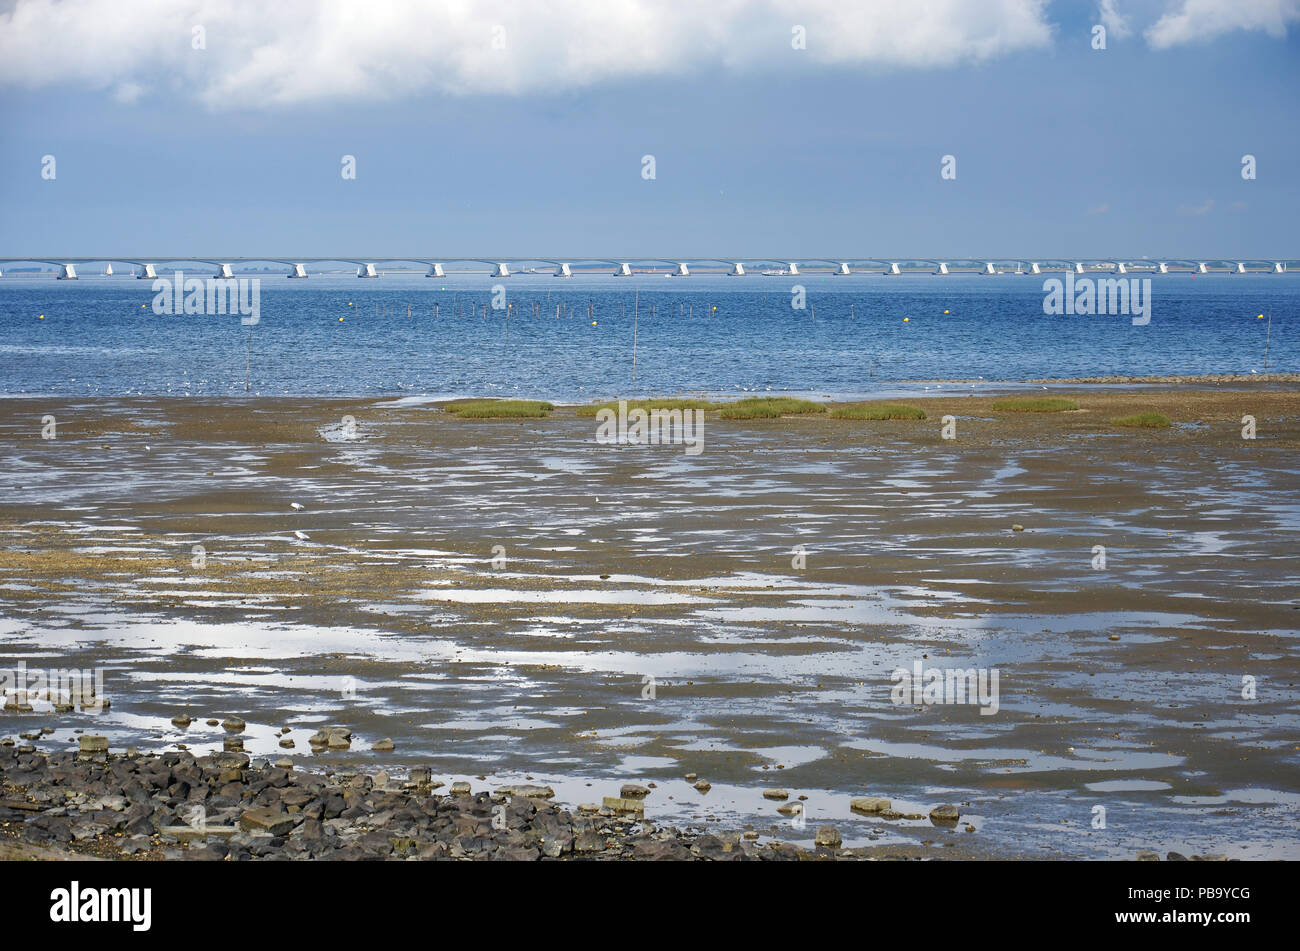 View across mudflats towards Oosterschelde estuary in the Netherlands and 5 kilometer long Zeeland Bridge Stock Photo